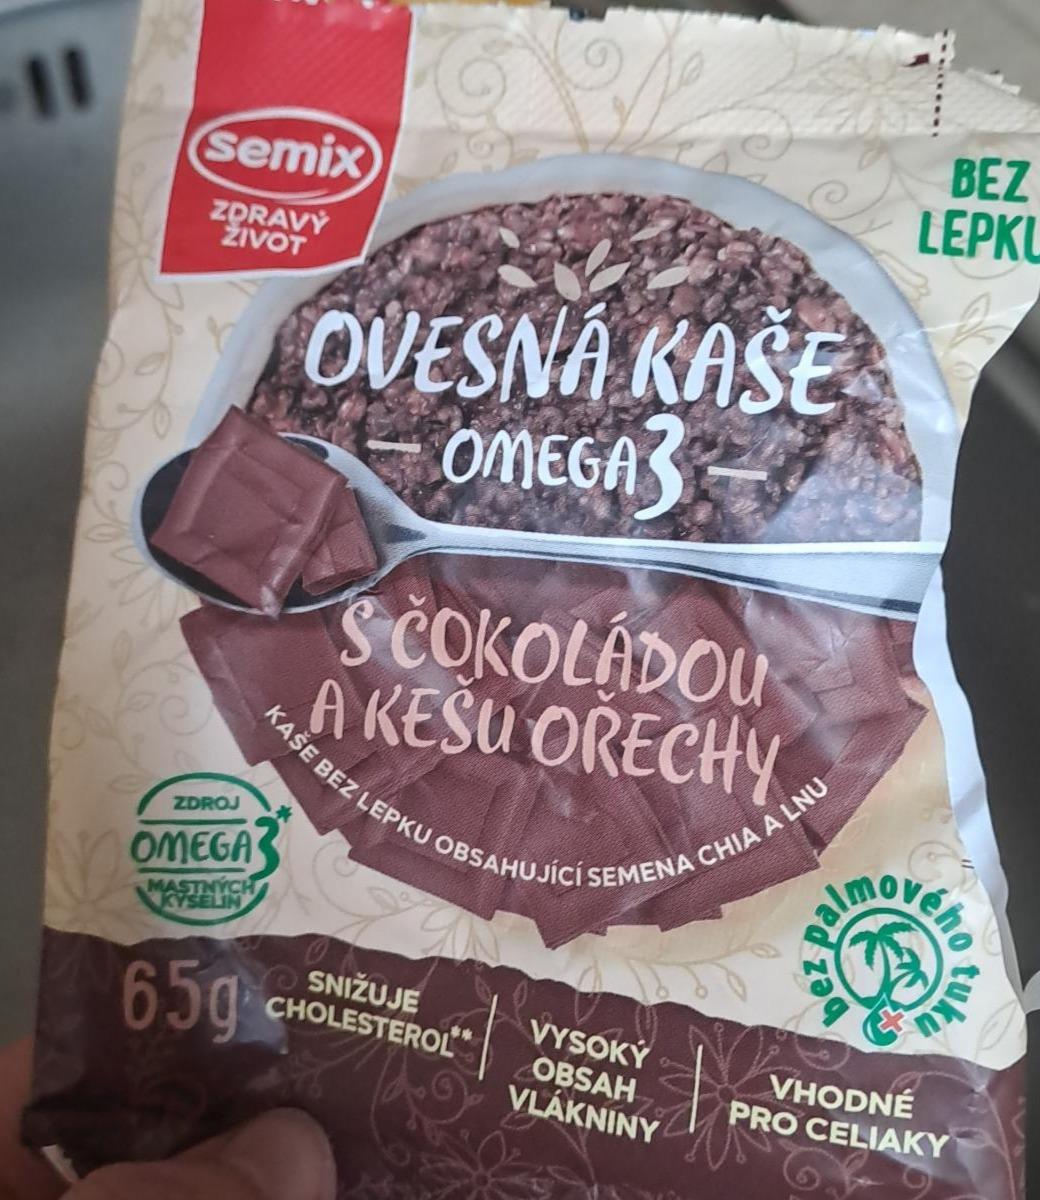 Fotografie - Ovesná kaše omega 3 s čokoládou a kešu ořechy Semix